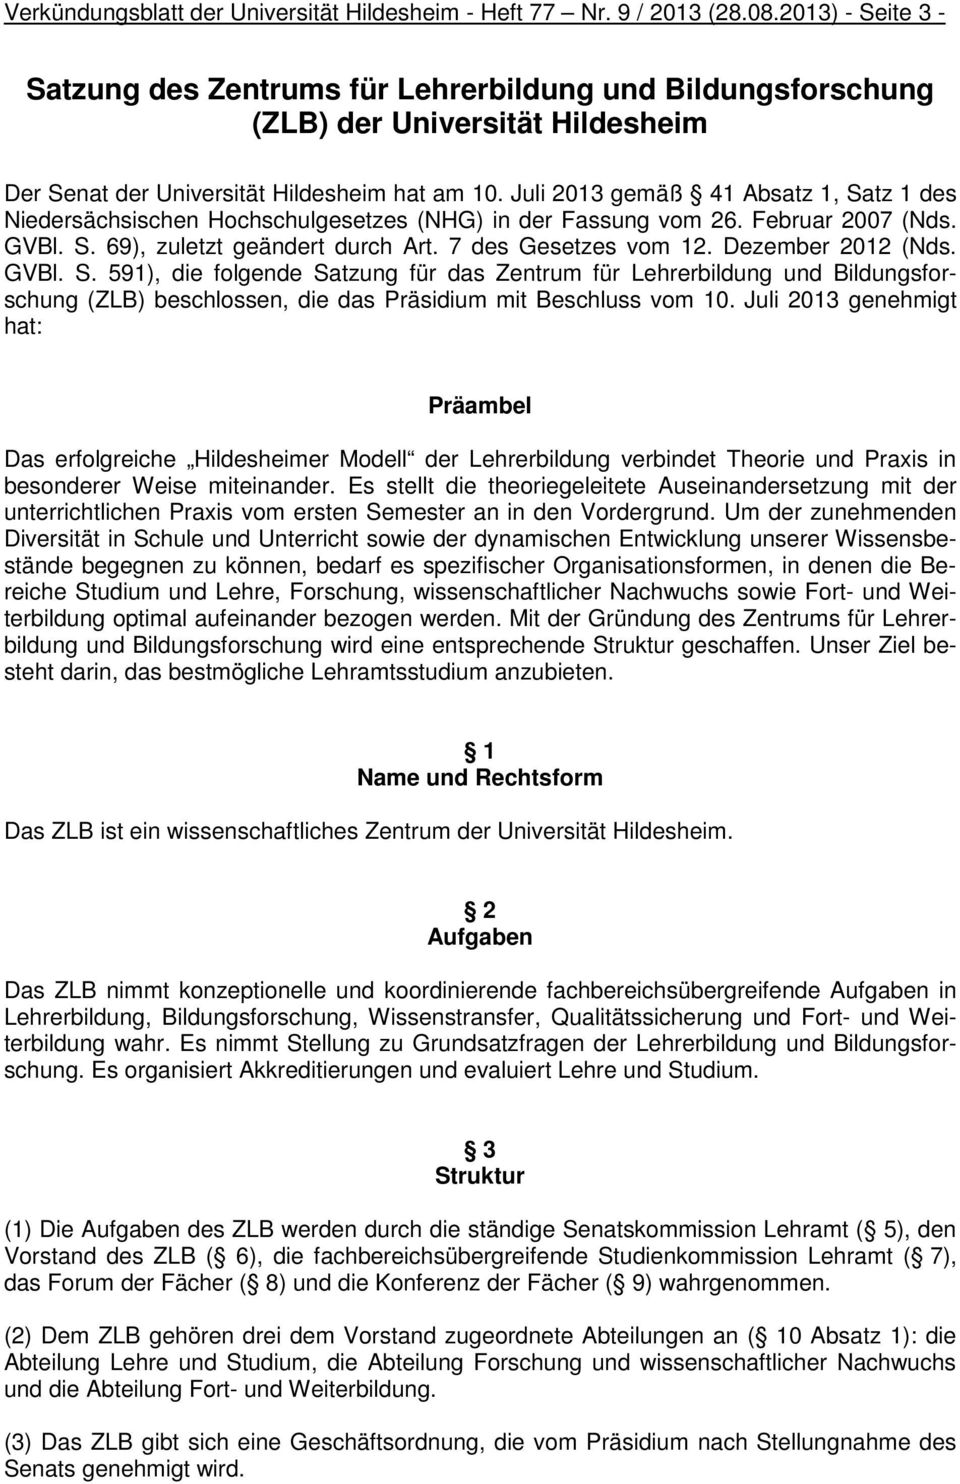 Juli 2013 gemäß 41 Absatz 1, Satz 1 des Niedersächsischen Hochschulgesetzes (NHG) in der Fassung vom 26. Februar 2007 (Nds. GVBl. S. 69), zuletzt geändert durch Art. 7 des Gesetzes vom 12.